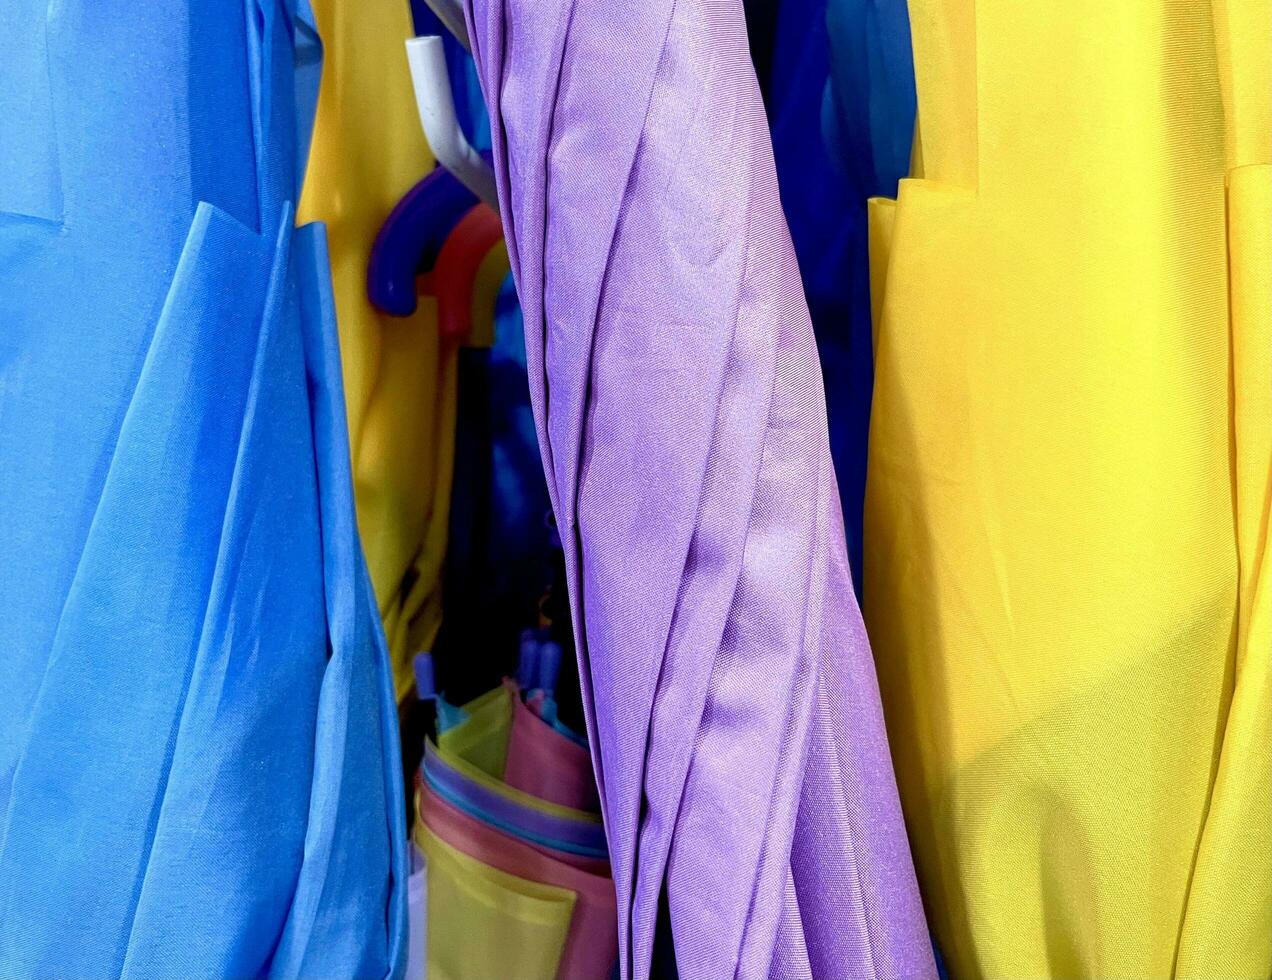 vivace blu, viola, e giallo chiuso ombrello rotolo nel memorizzare isolato su orizzontale fotografia rapporto foto